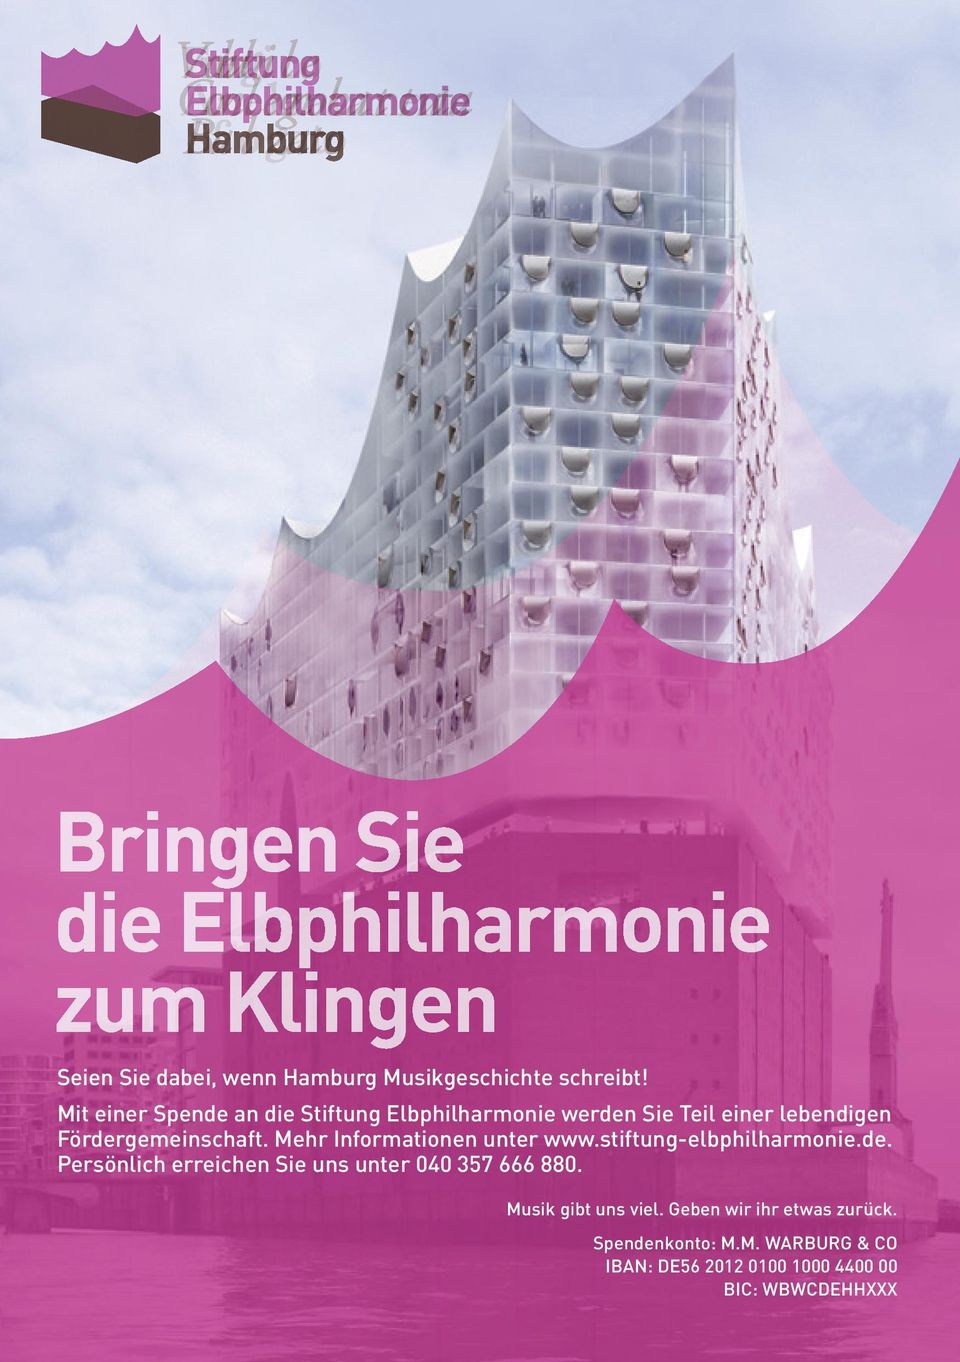 Mehr Informationen unter www.stiftung-elbphilharmonie.de. Persönlich erreichen Sie uns unter 040 357 666 880.